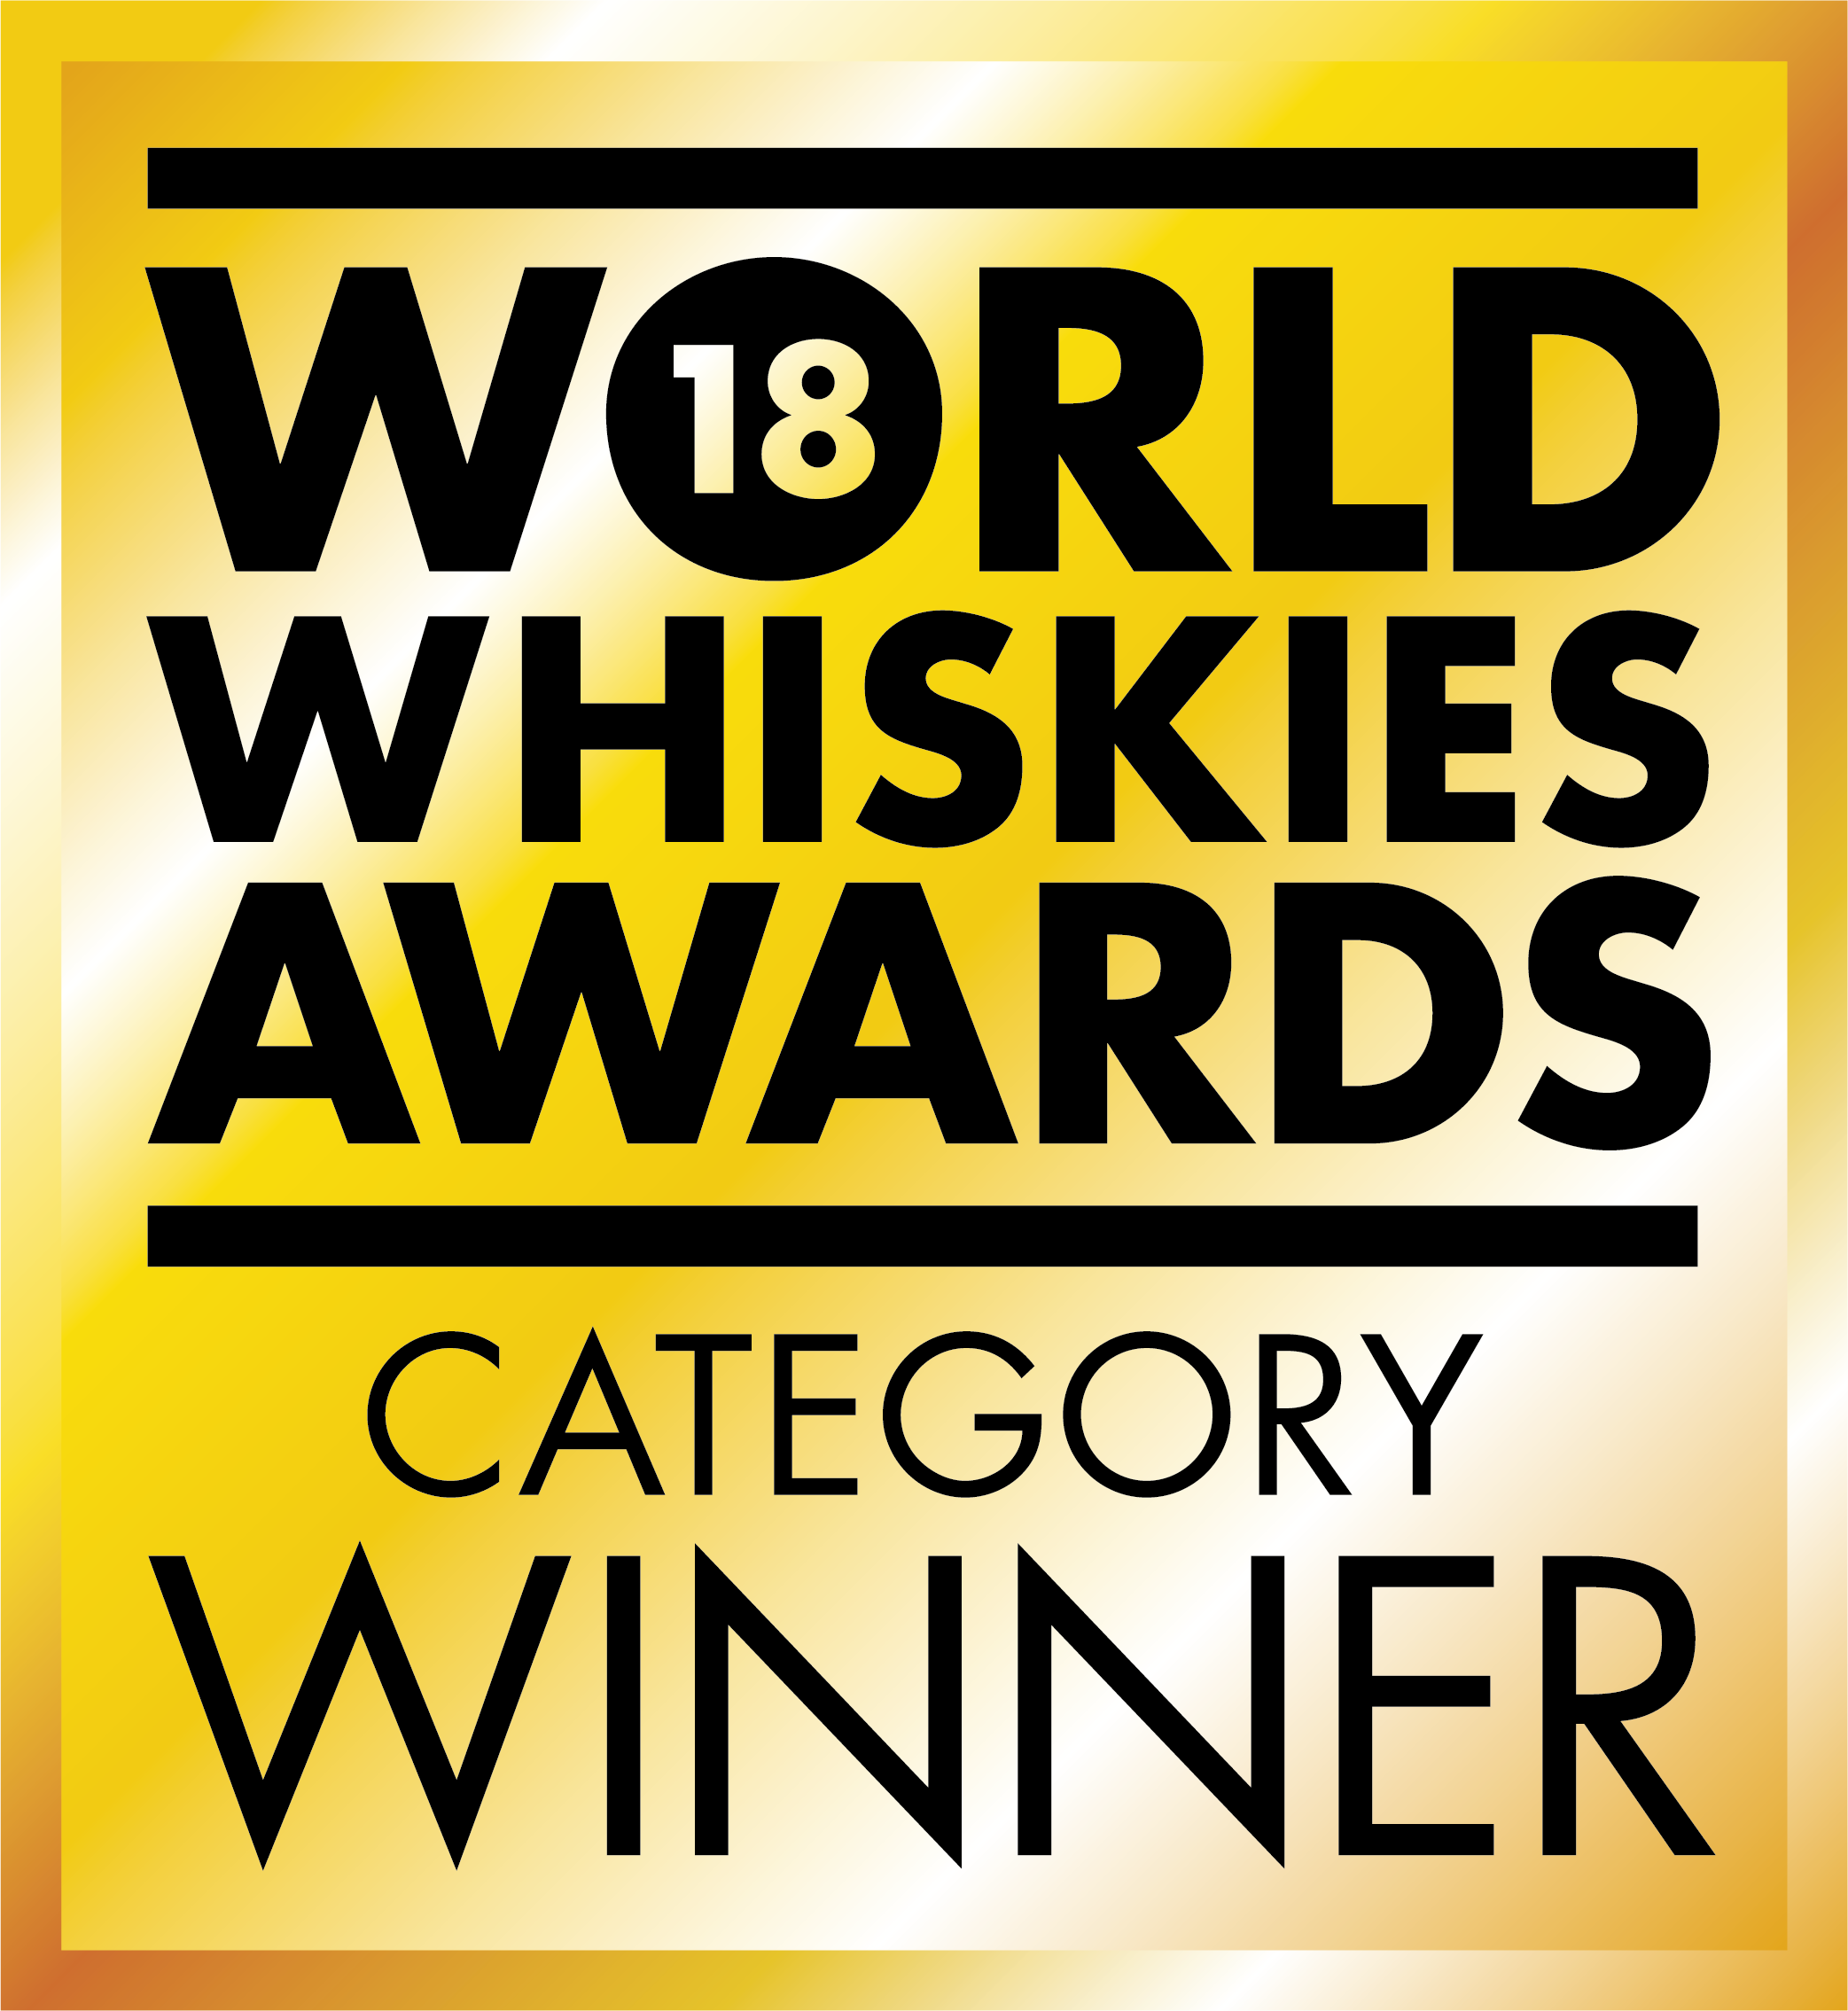 World Whiskies Awards 2018